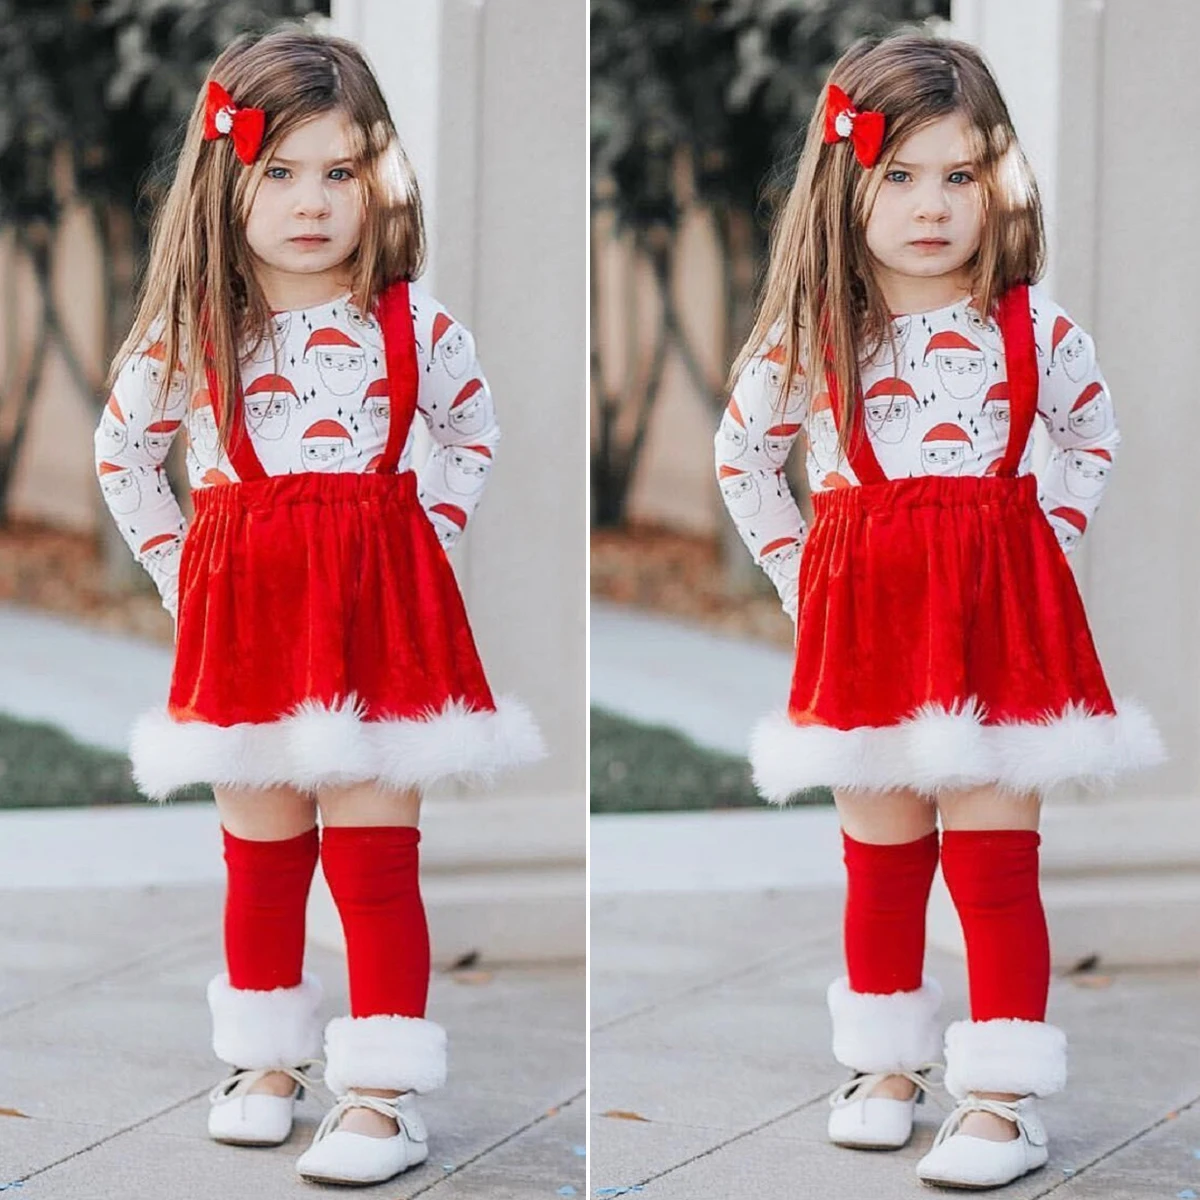 Г. Весенне-осенняя одежда для малышей Рождественская одежда Санта-Клауса для маленьких девочек топ с длинными рукавами, юбка на бретелях, платье, наряд От 6 месяцев до 4 лет